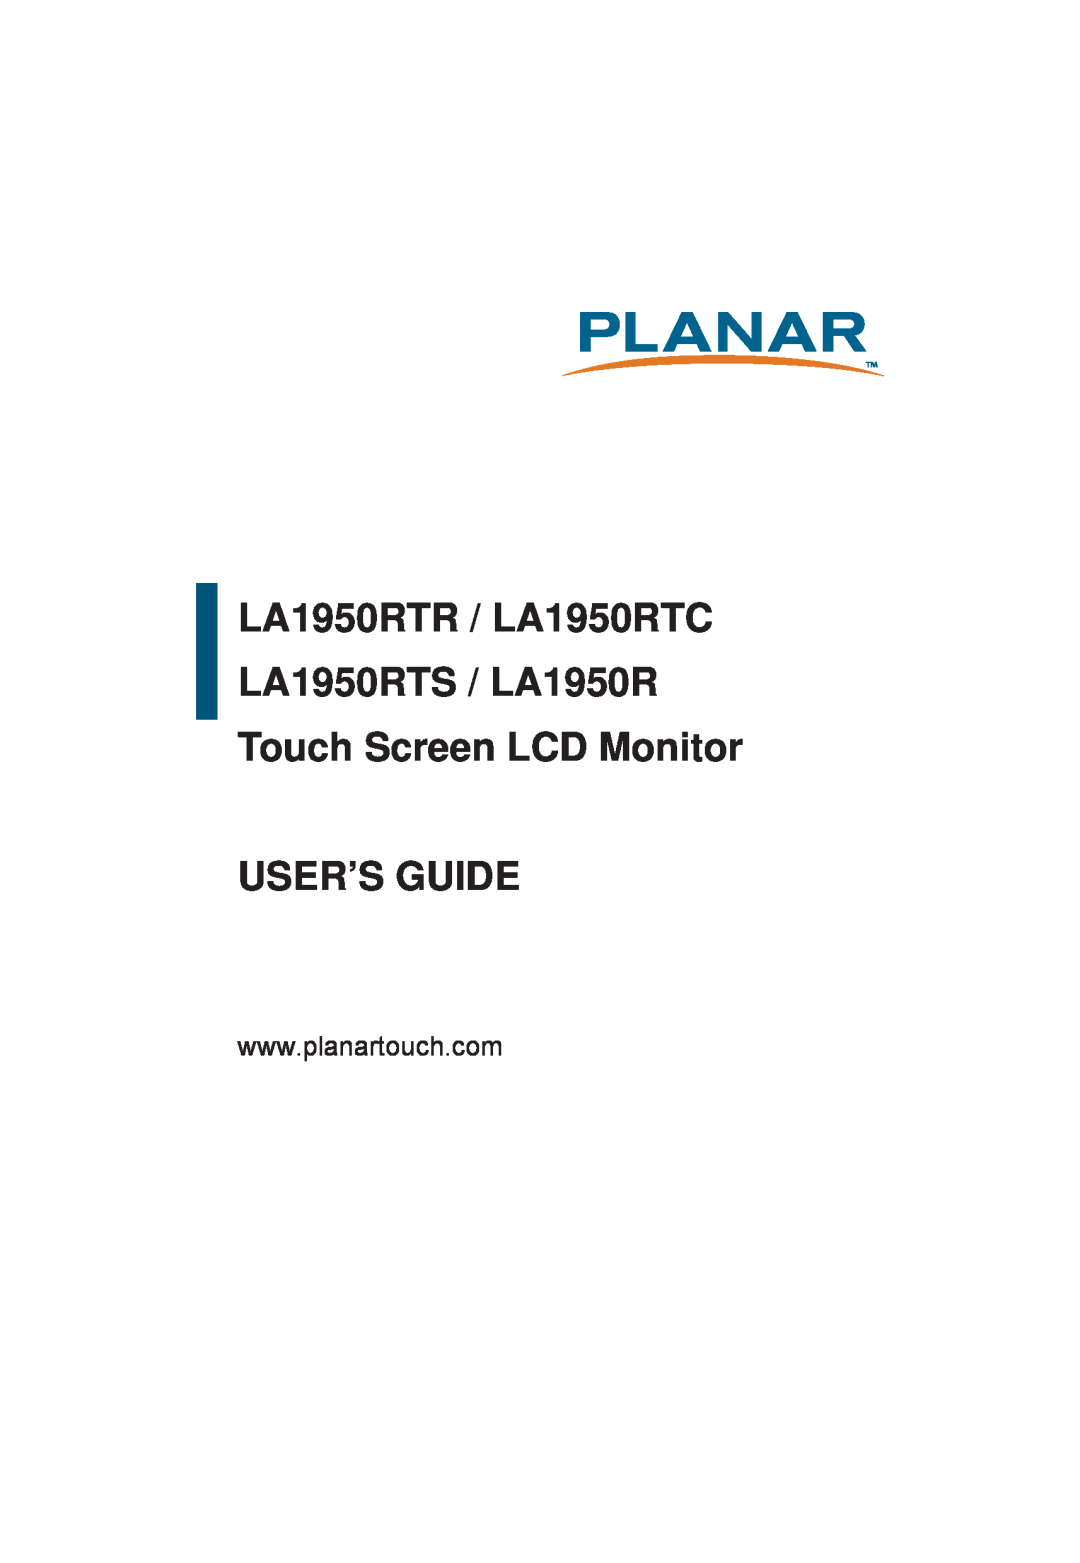 Planar manual LA1950RTR / LA1950RTC LA1950RTS / LA1950R Touch Screen LCD Monitor, User’S Guide 